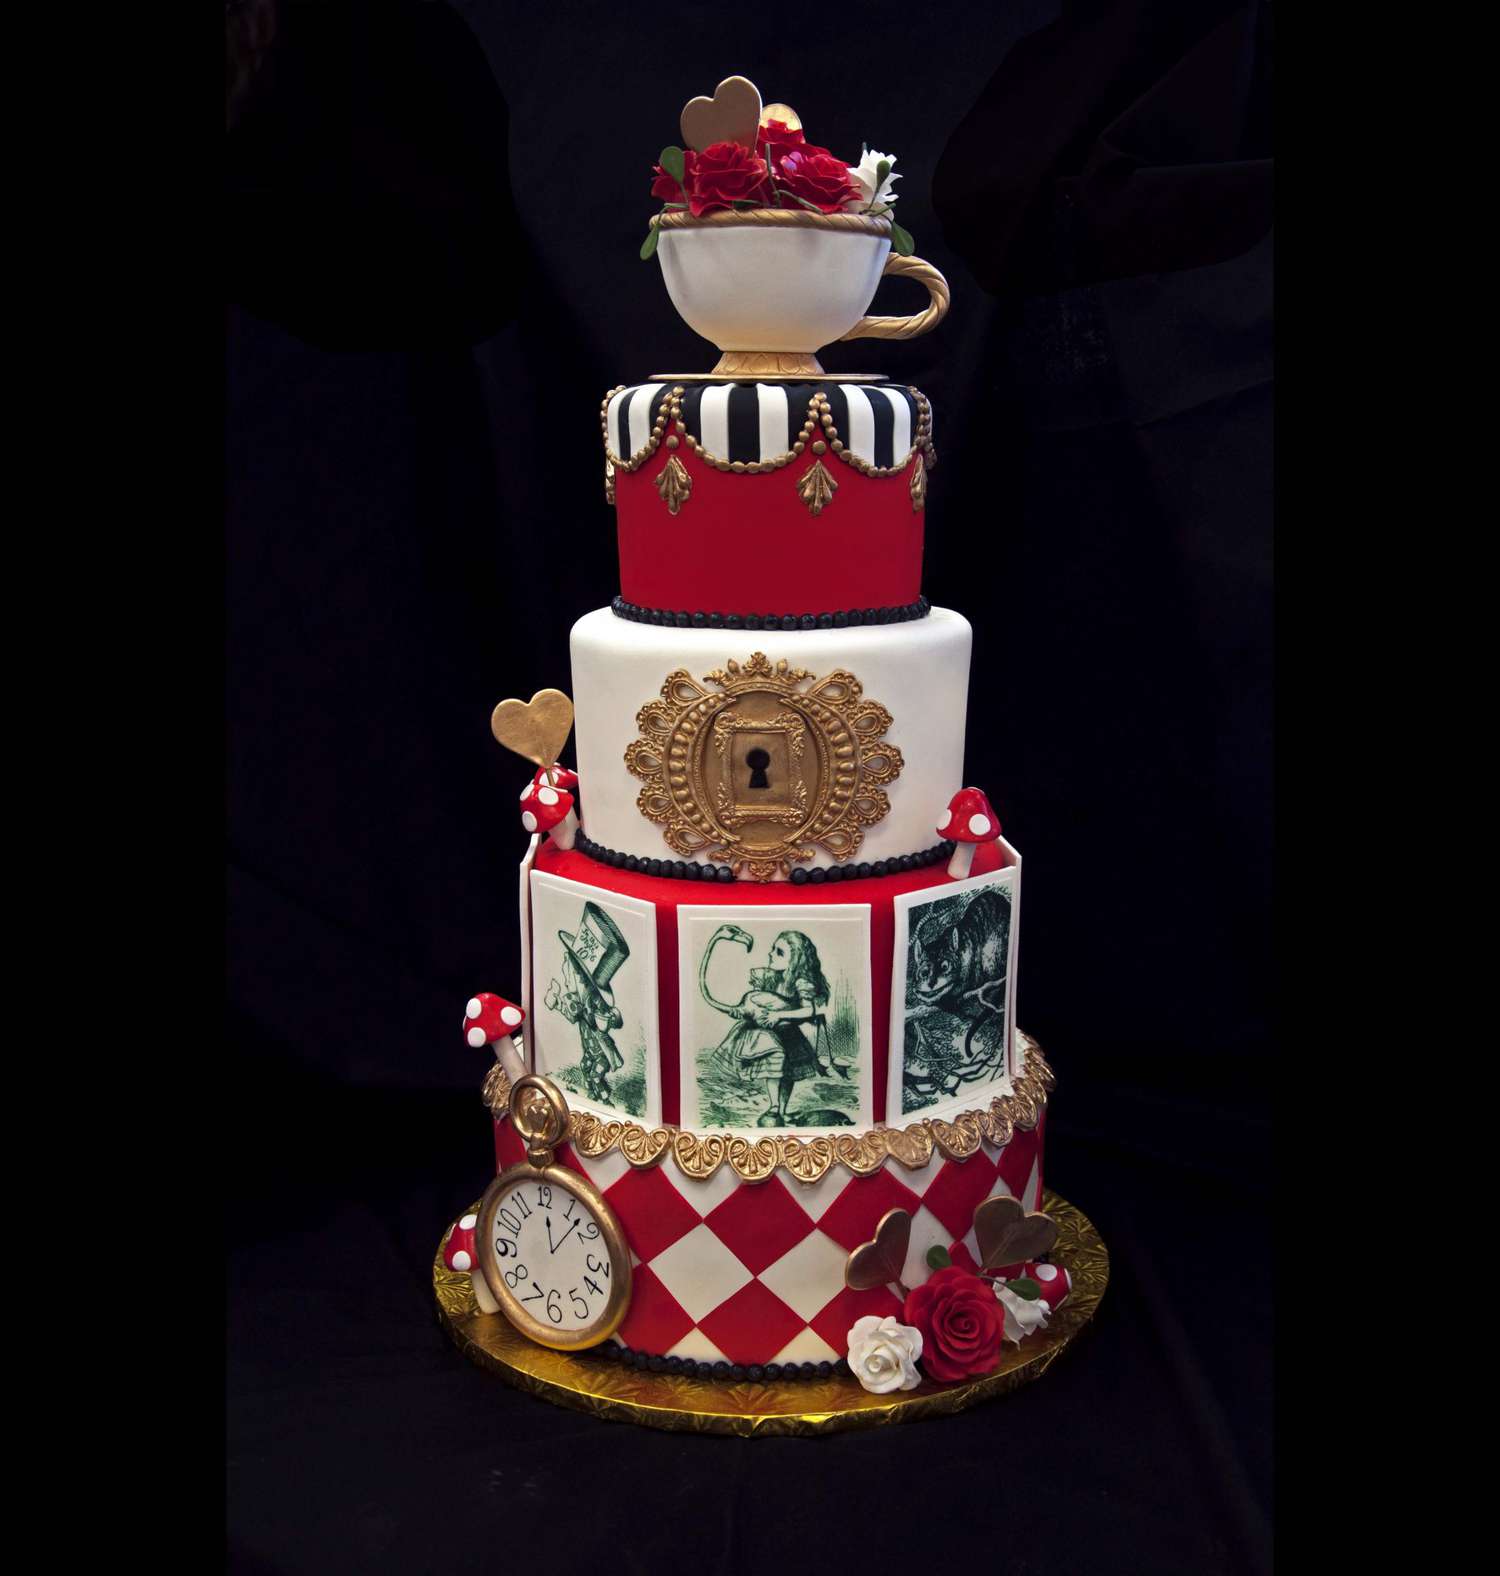 Alice in Wonderland inspired cake